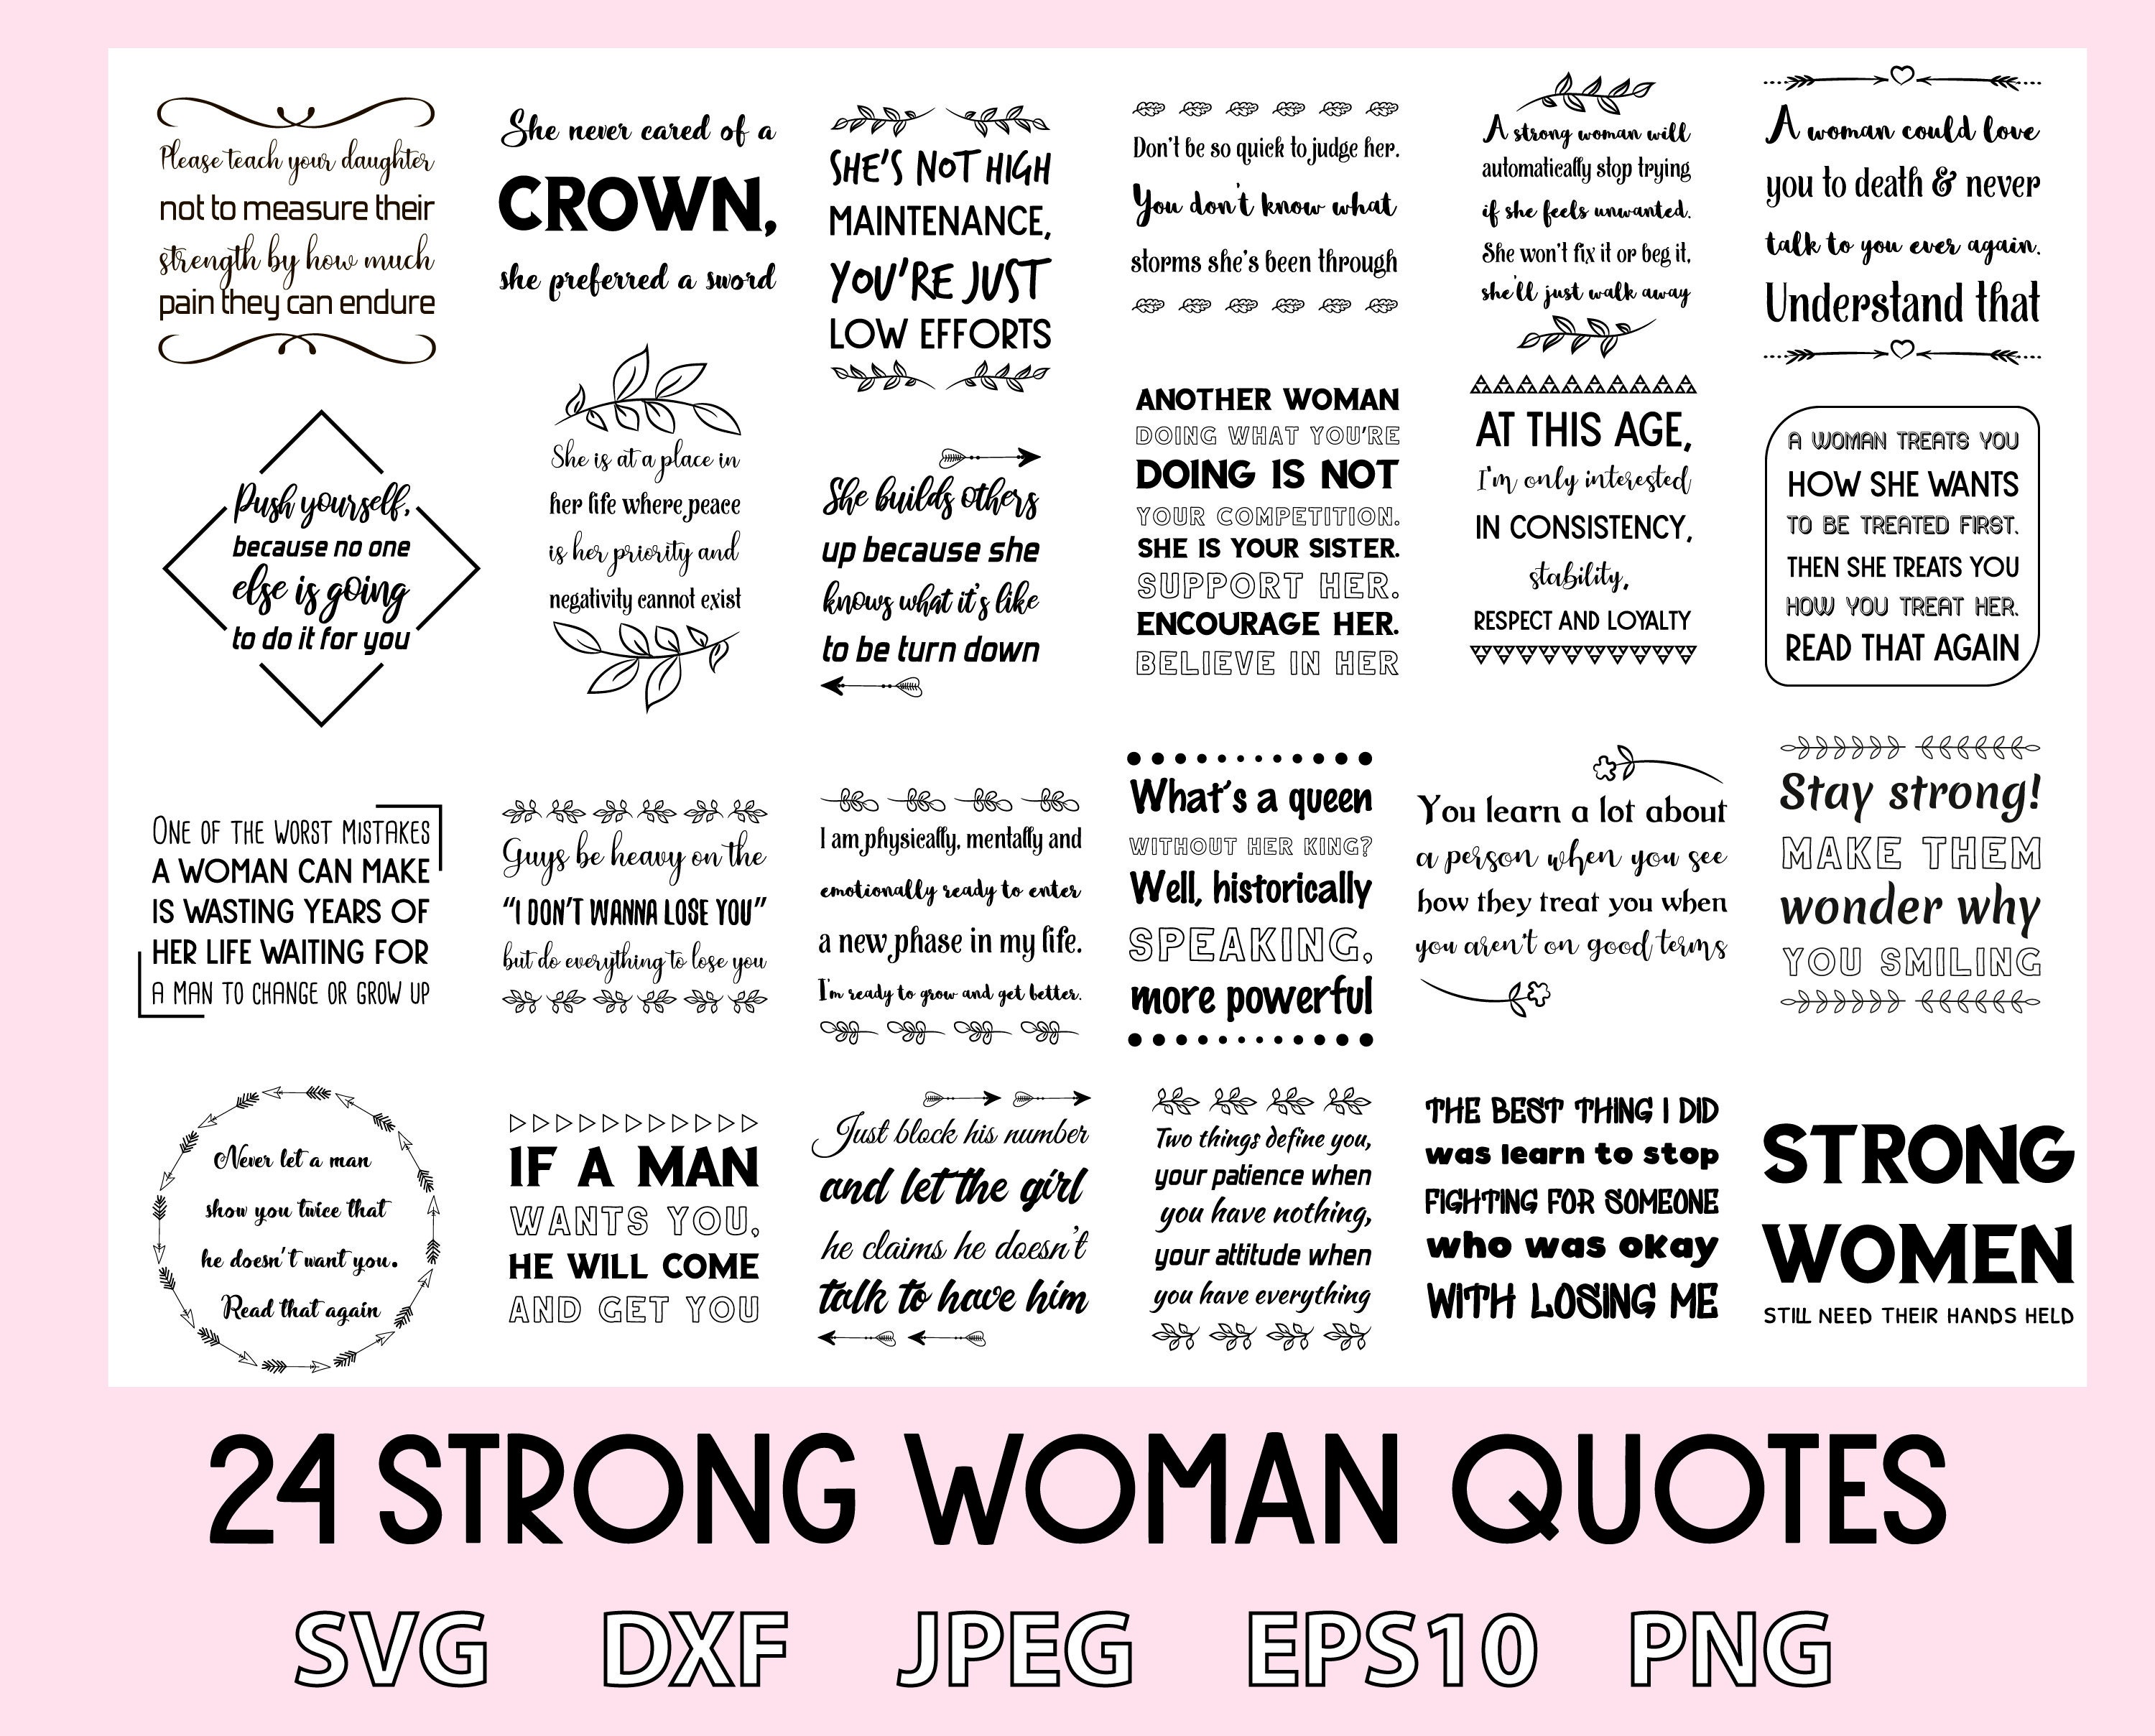 Women Power Strength Sticker - Women Power Strength Girl - Discover & Share  GIFs